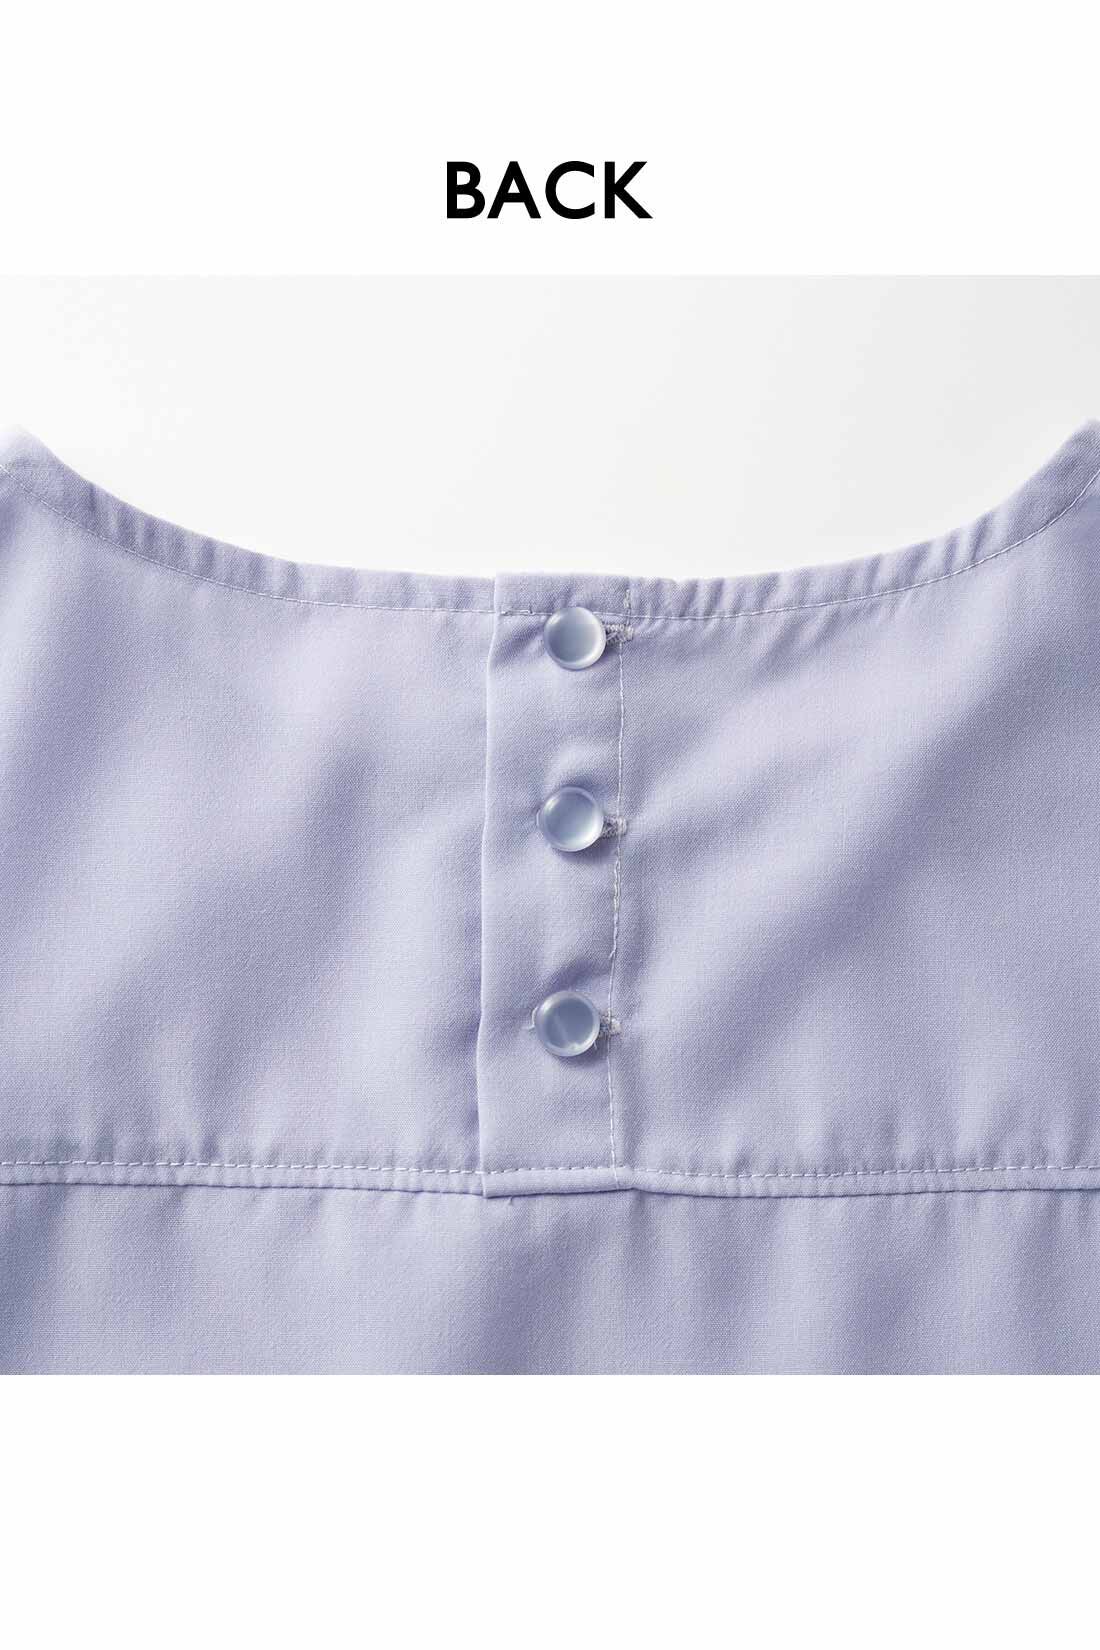 Real Stock|IEDIT[イディット]　ヴィンテージ風スパンローン素材のしわが気になりにくいシャツライクトップス〈チャコール〉|背中のボタンは、デザインポイントにも。ヨークでシャツのきちんと感もプラス。お届けするカラーとは異なります。